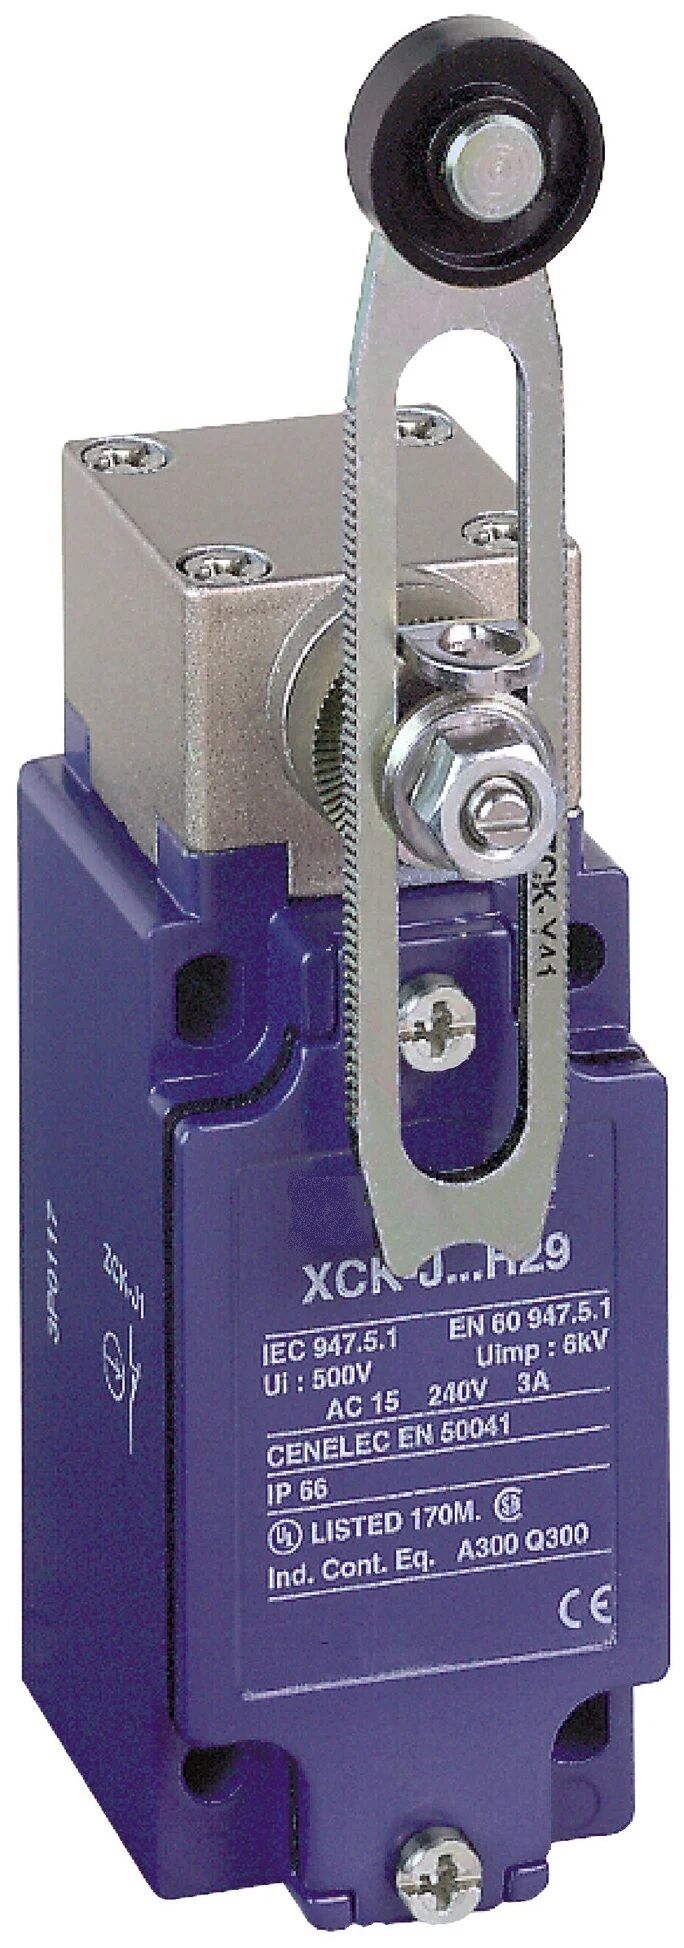 XCK-J10541 - выключатель концевой с роликом на рычаге регулируемой длины